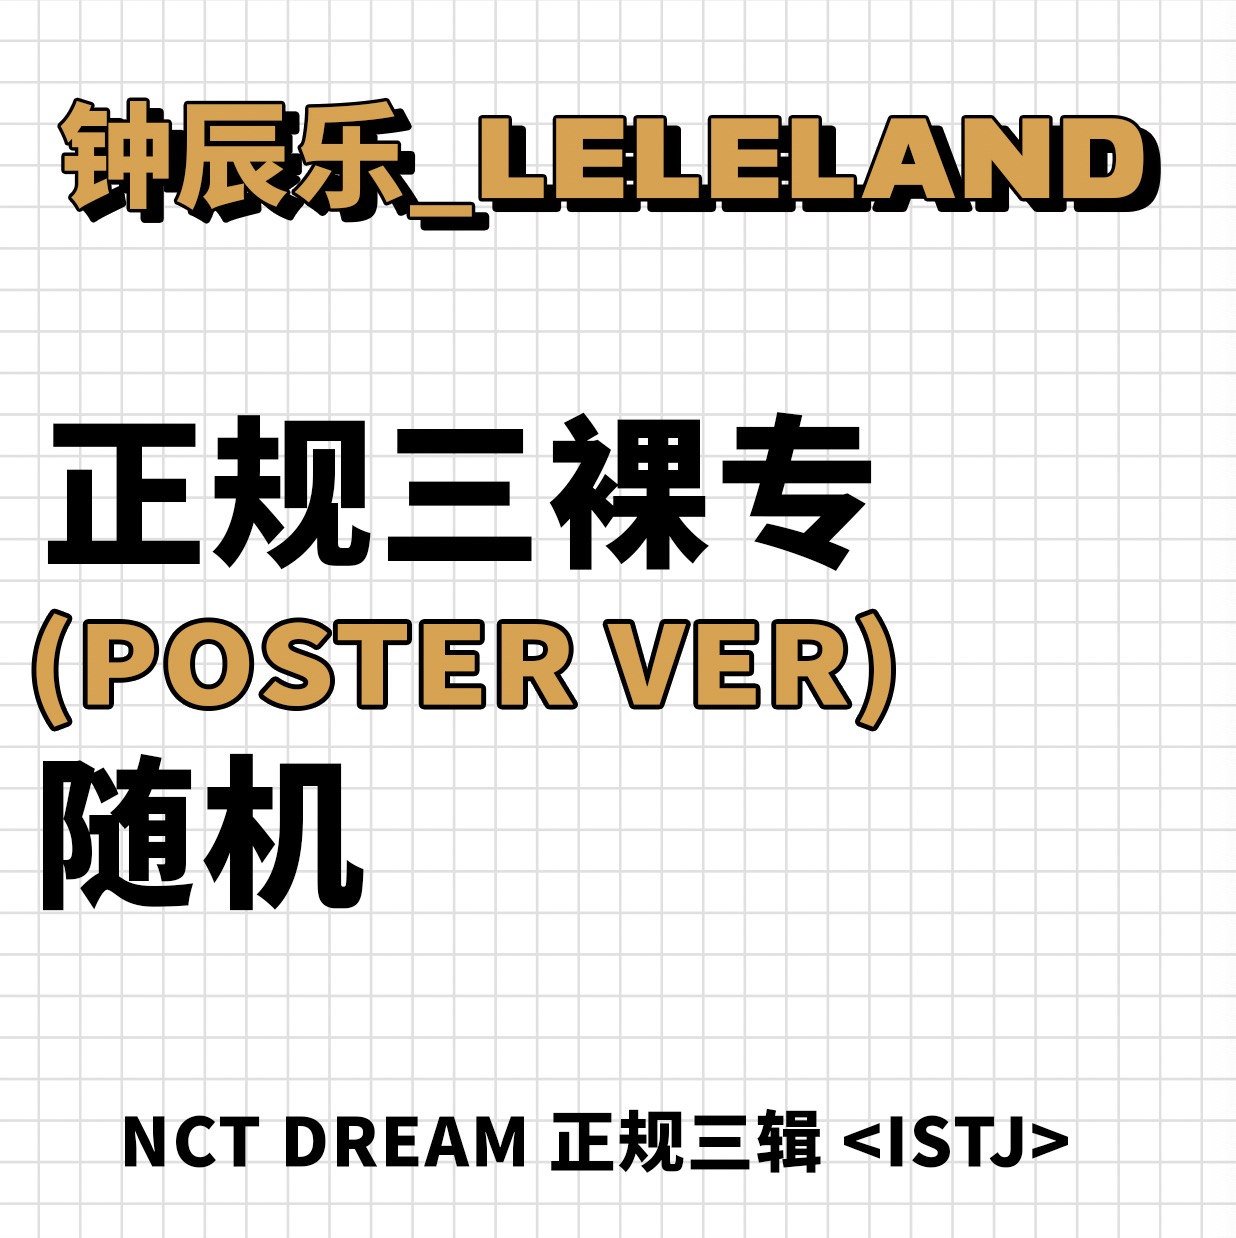 [全款 裸专] NCT DREAM - 正规3辑 [ISTJ] (Poster Ver.) (随机版本)_钟辰乐吧_ChenLeBar